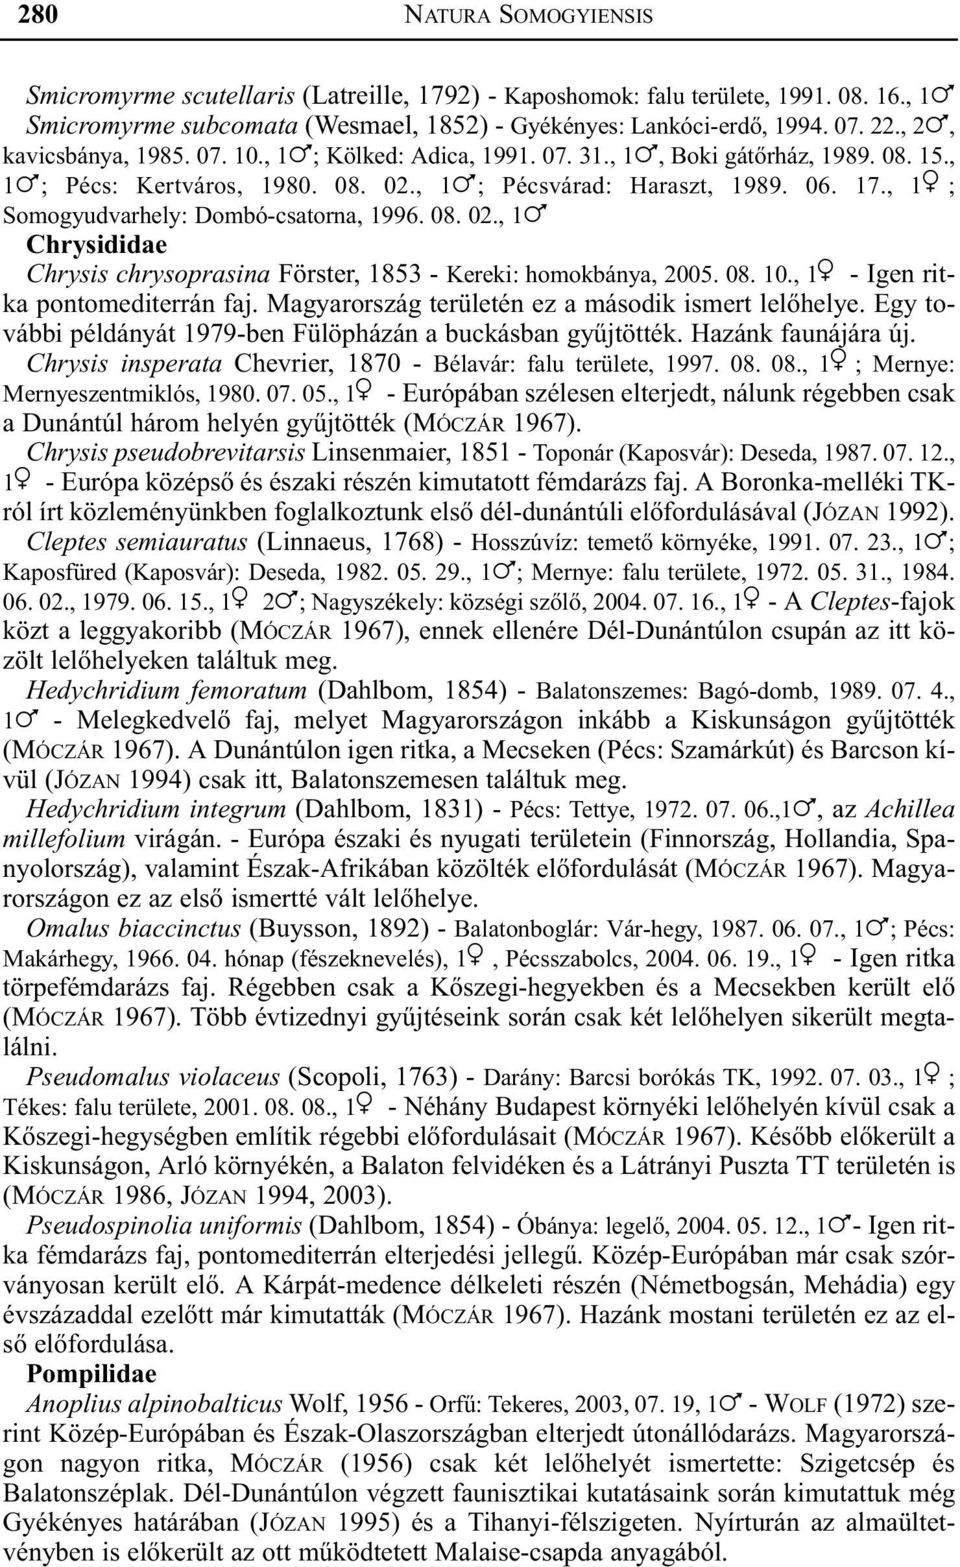 , 1 ; Somogyudvarhely: Dombó-csatorna, 1996. 08. 02., 1! Chrysididae Chrysis chrysoprasina Förster, 1853 - Kereki: homokbánya, 2005. 08. 10., 1 - Igen ritka pontomediterrán faj.